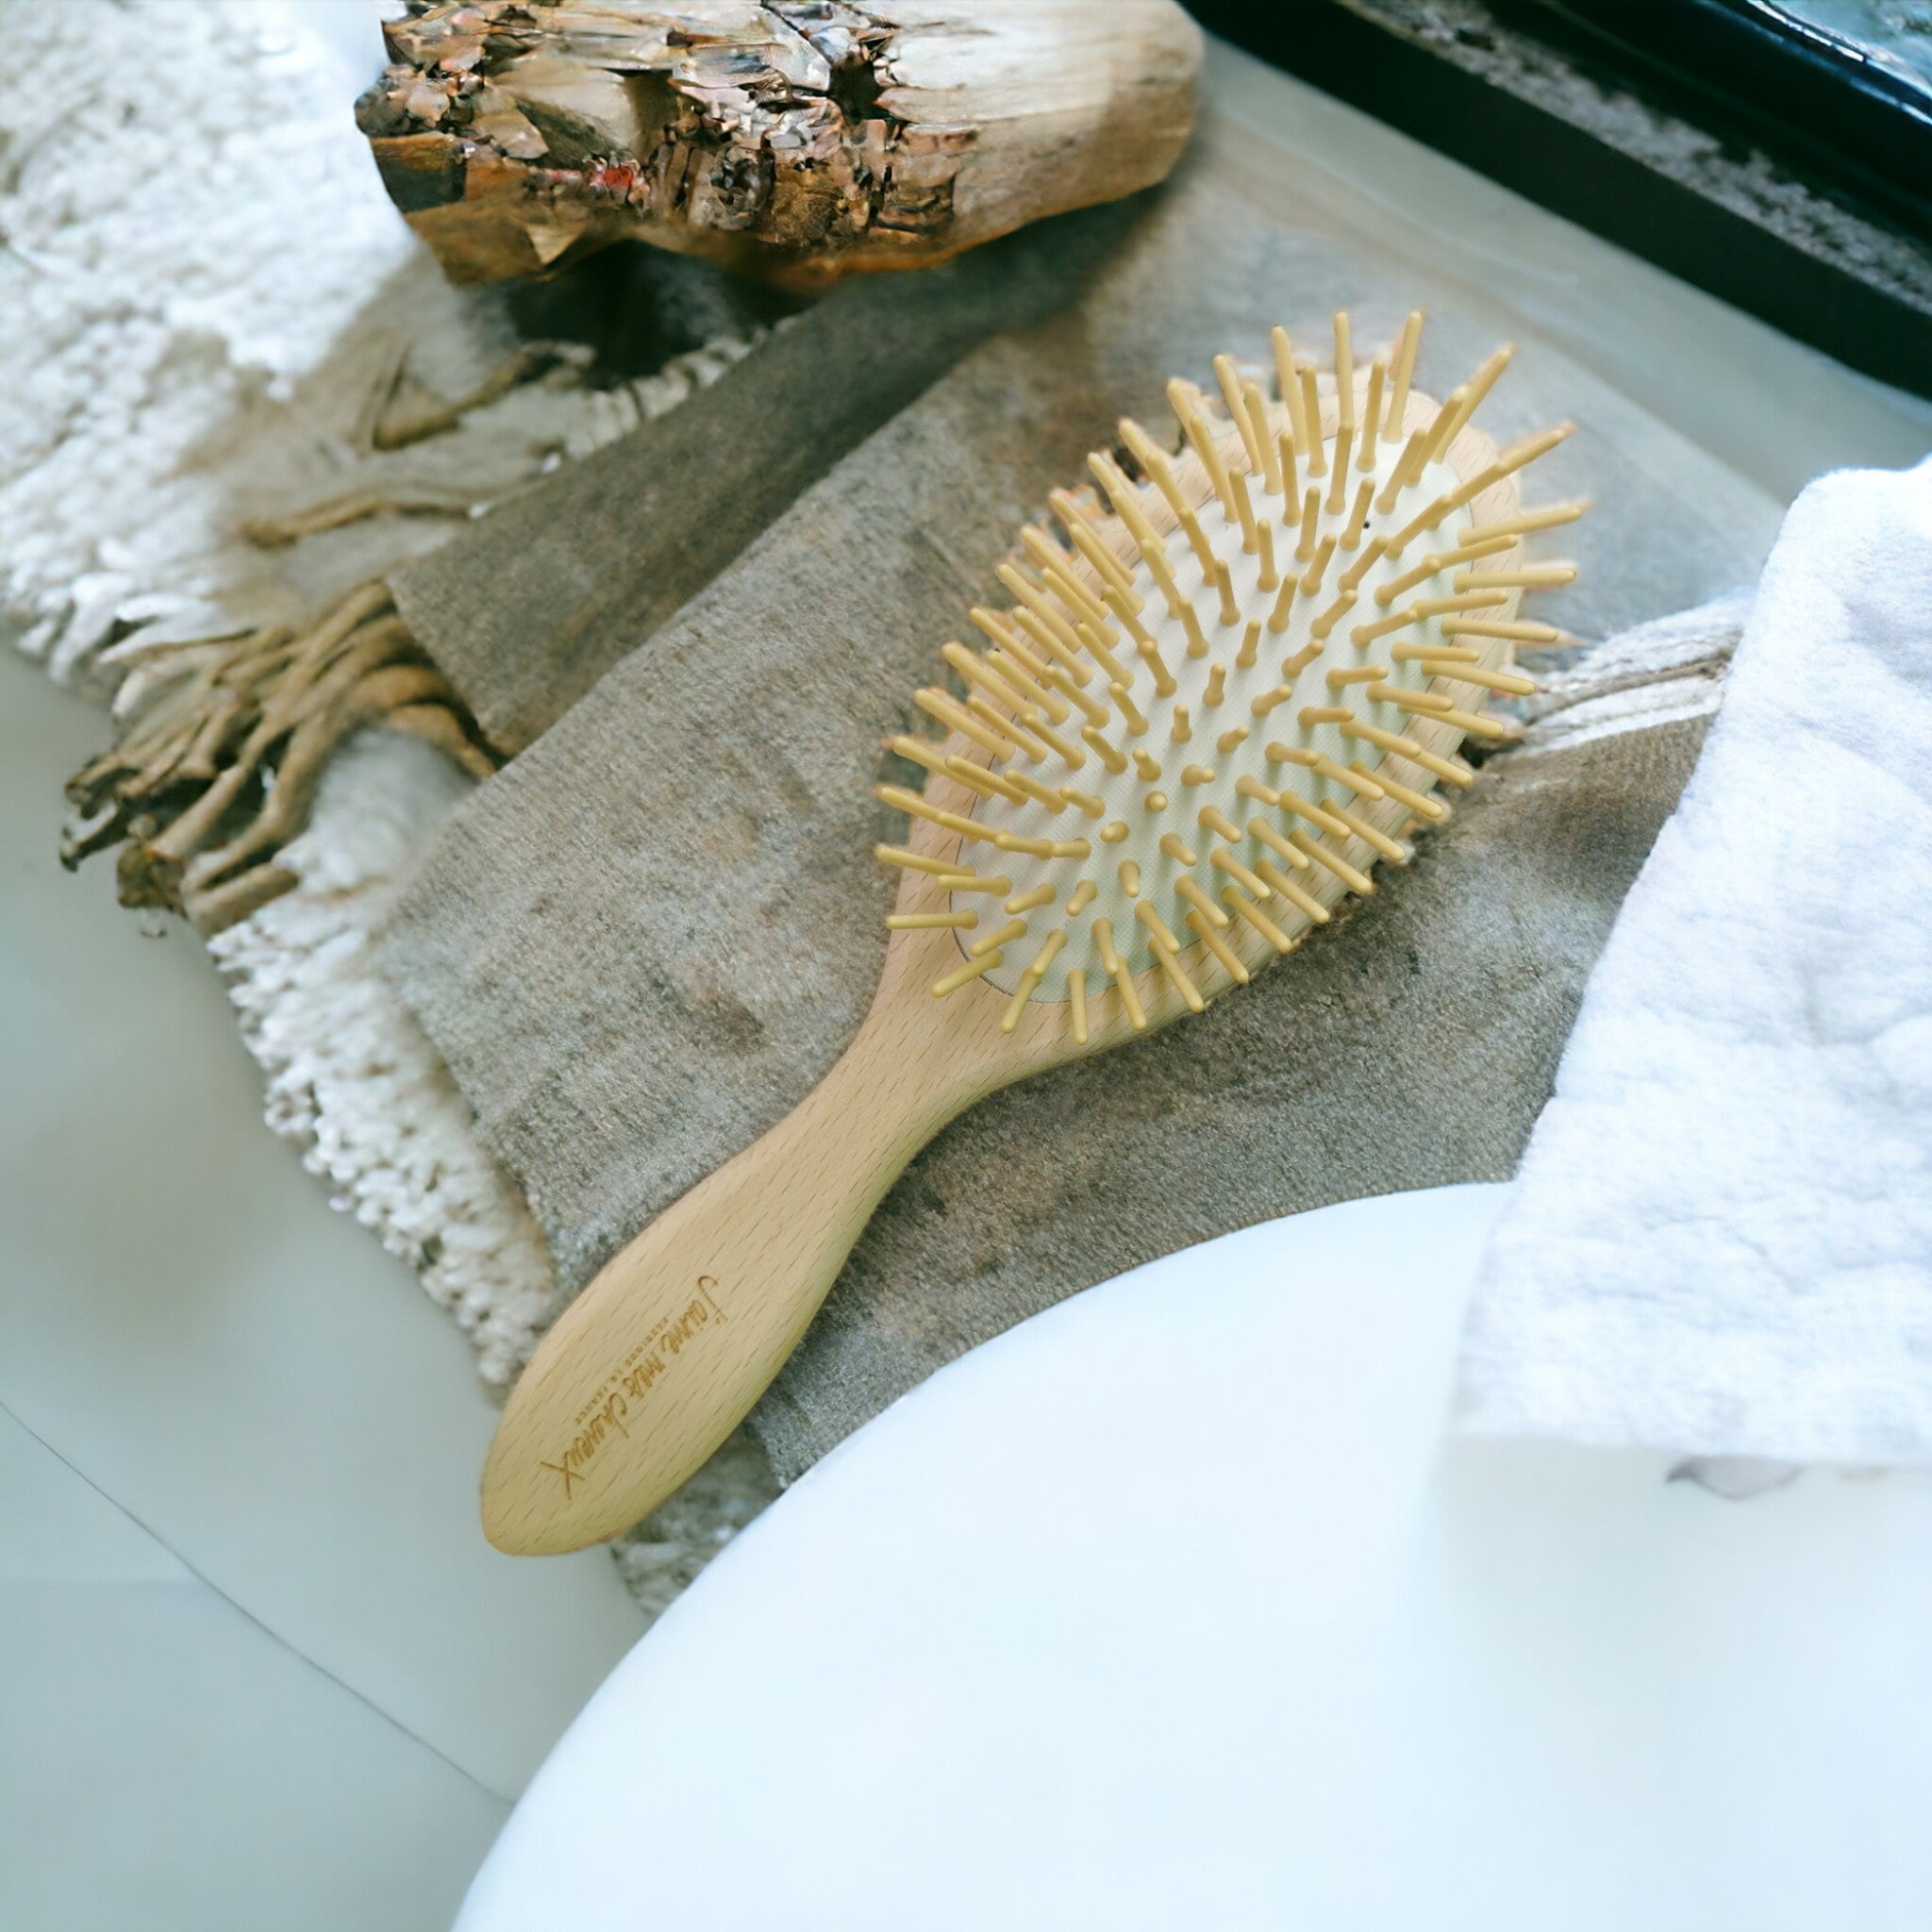 natürliche haarbürste aus holz mit holzborsten platziert im Badezimmer auf einem handtuch